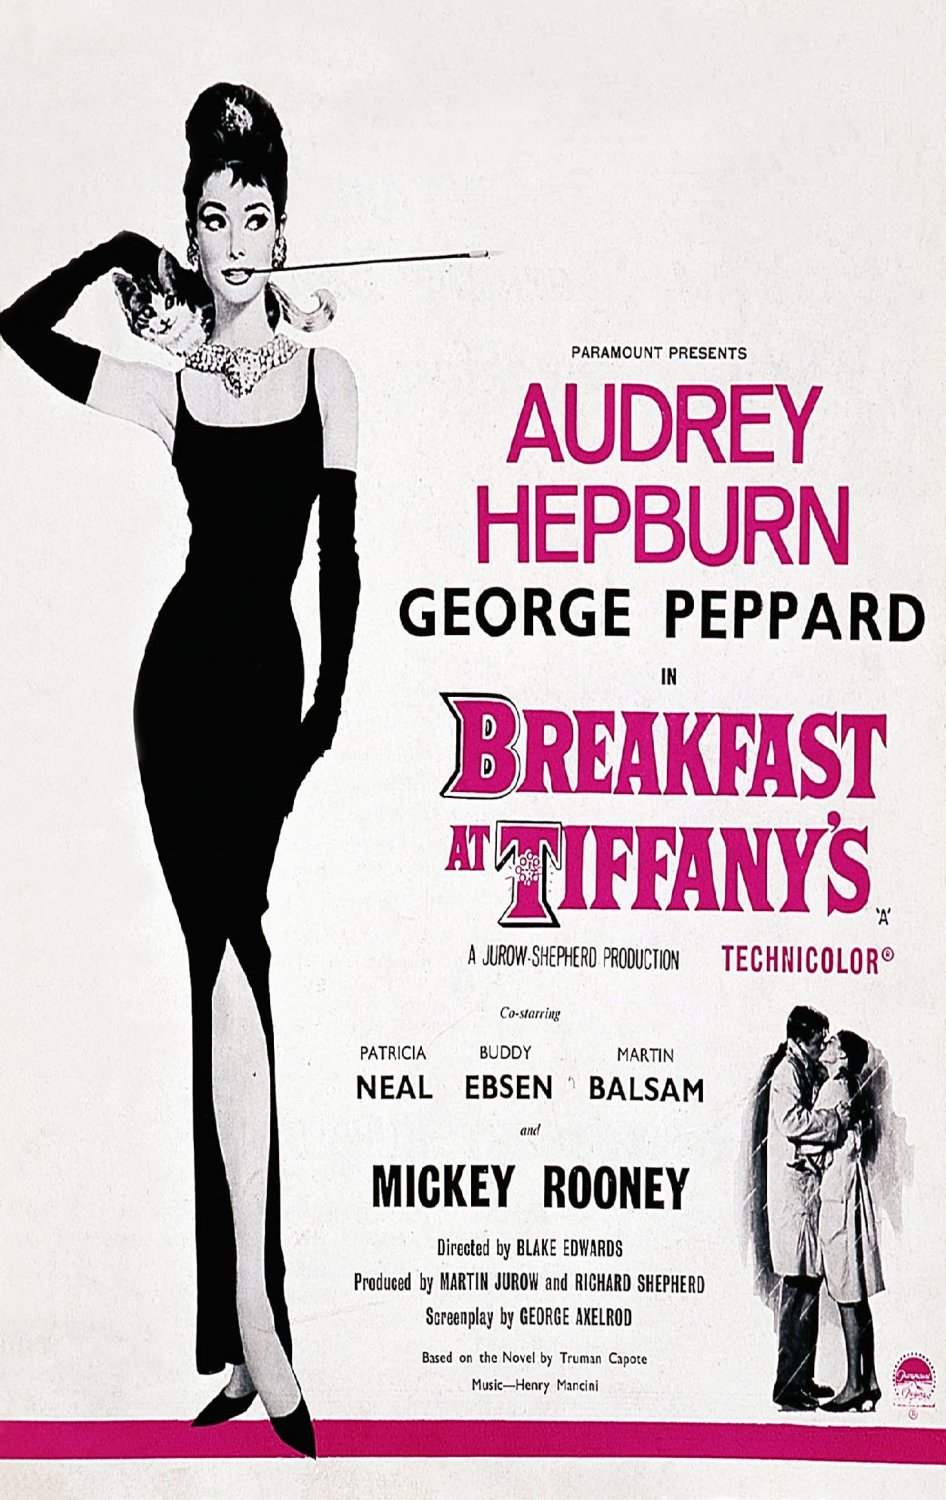 Audrey Hepburn Poster 13x19 inches